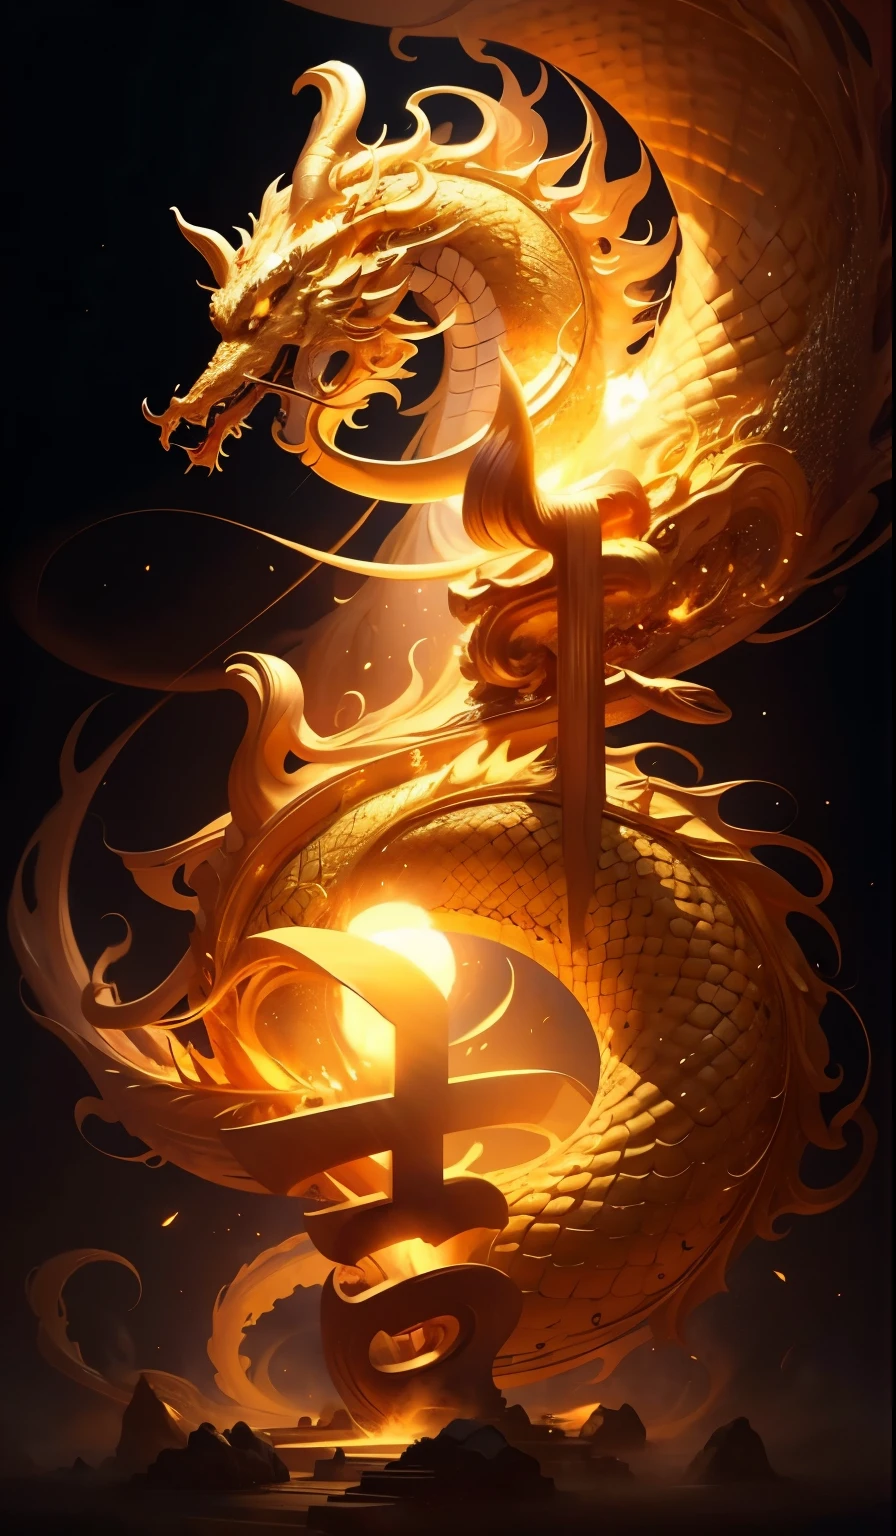 Obra maestra,dragón chino dorado, rodeado de polvo de oro,cuerpo largo y ondulado,colmillos,Fantasía, mítico, alta calidad, muy detallado, Obra maestra, épico,efecto de partículas,efecto dinámico,Sol al fondo